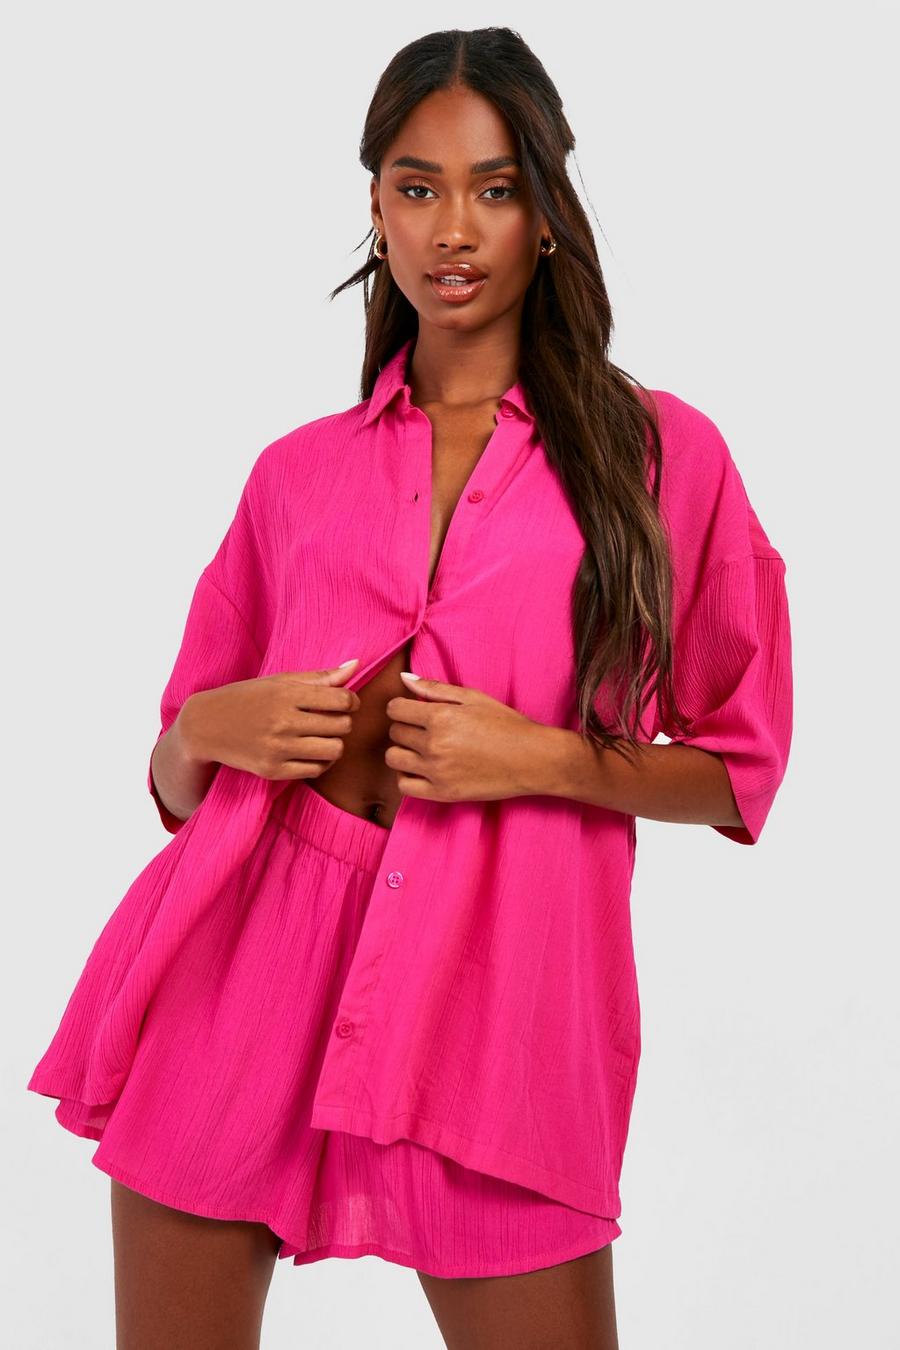 Ensemble texturé avec chemise, short et chouchou, Hot pink image number 1